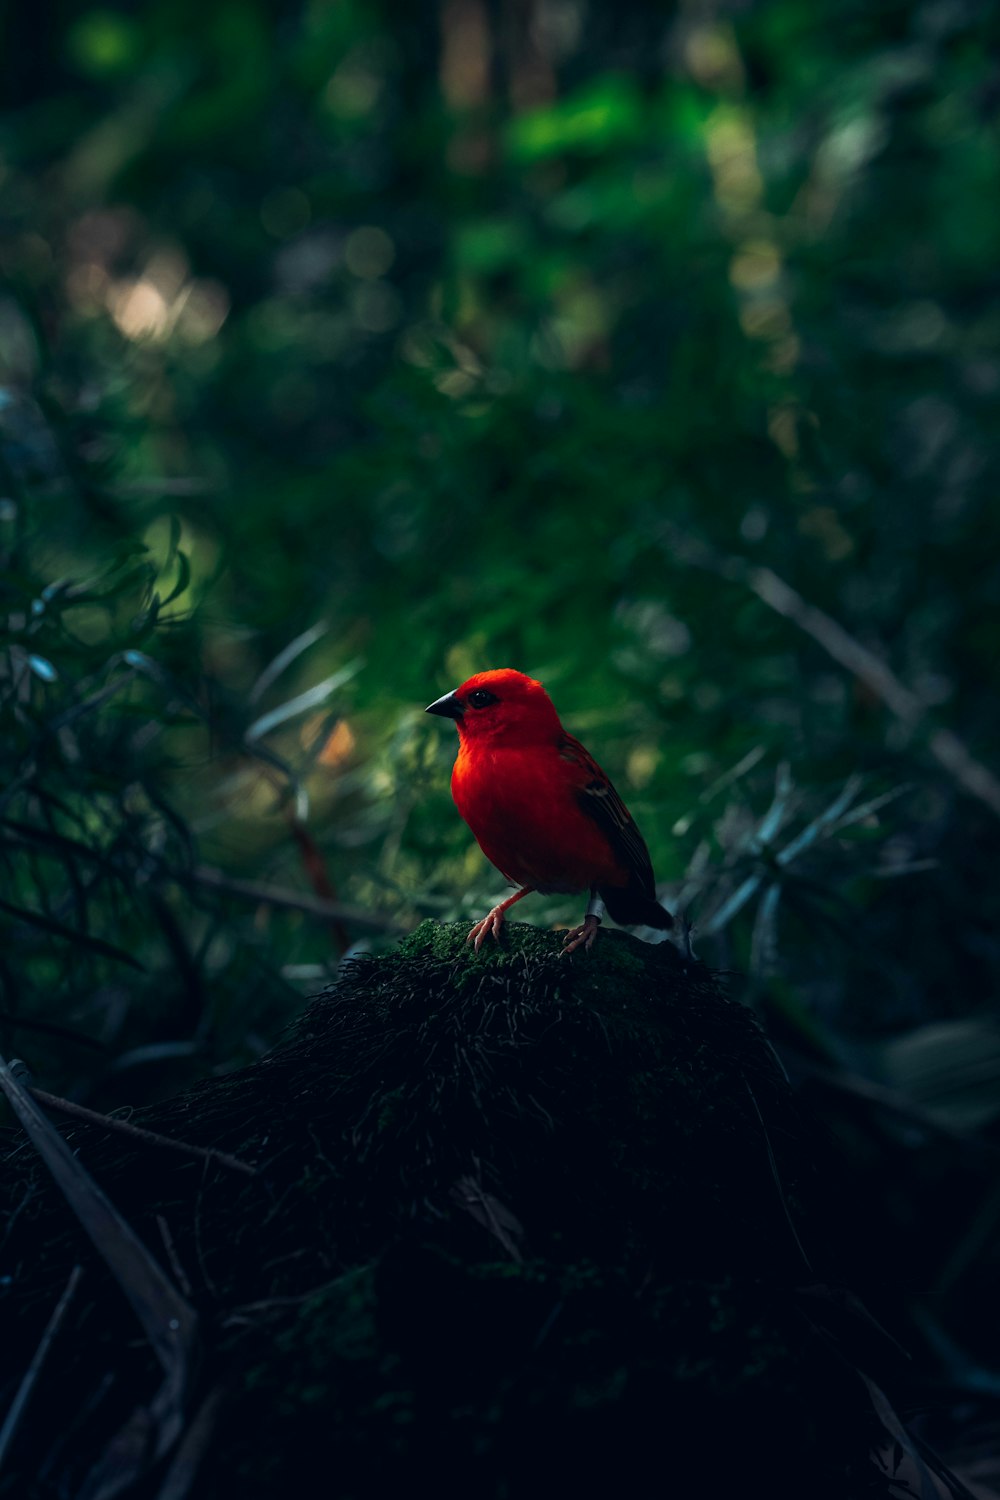 red cardinal bird on brown nest